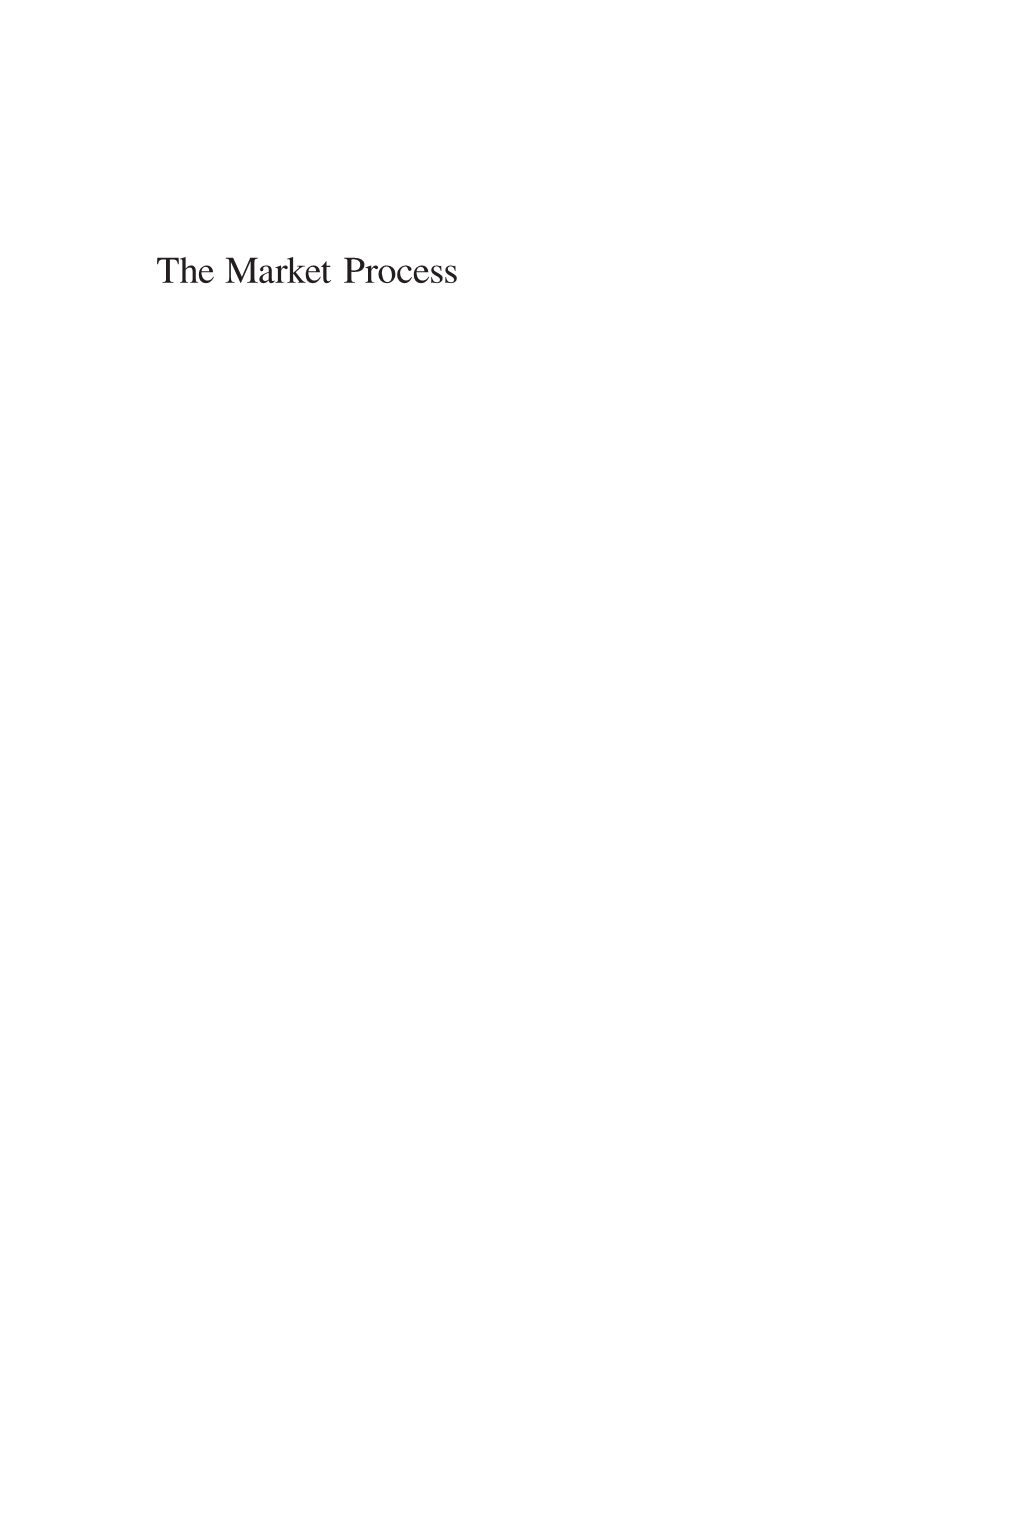 Boettke & Prychitko, the Market Process